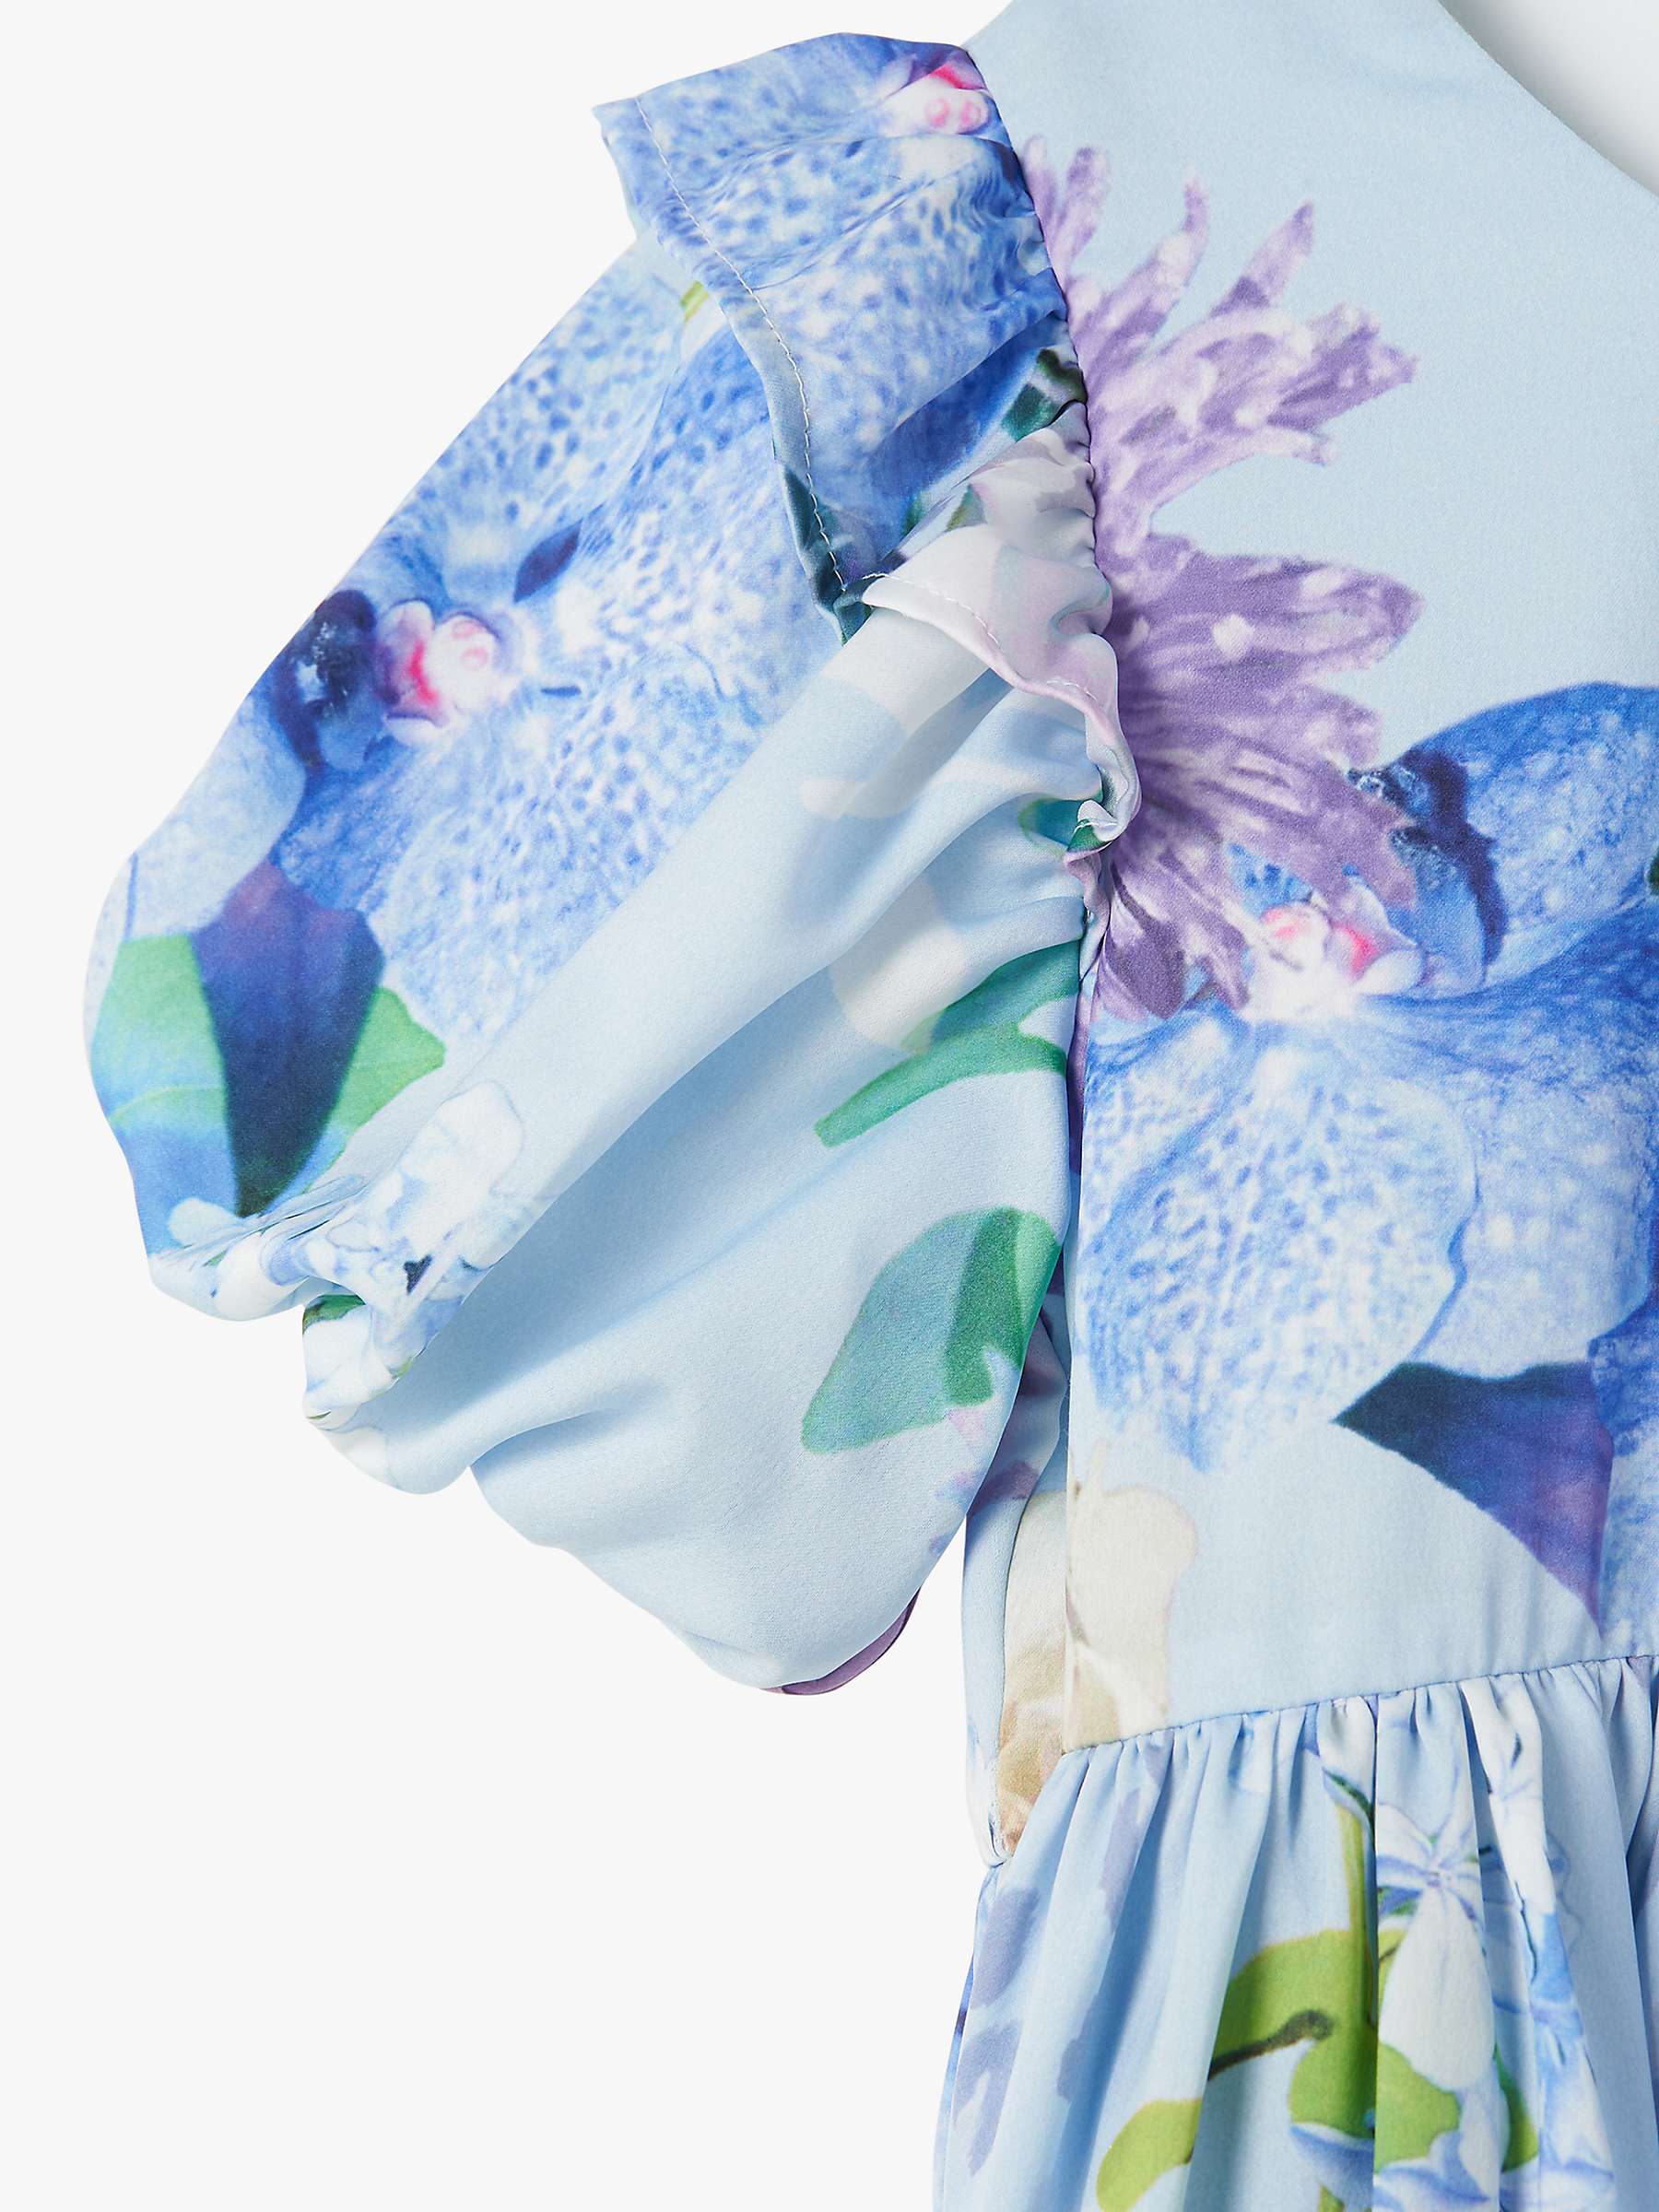 Buy Angel & Rocket Kids' Satin Floral Print Occasion Dress, Blue Online at johnlewis.com